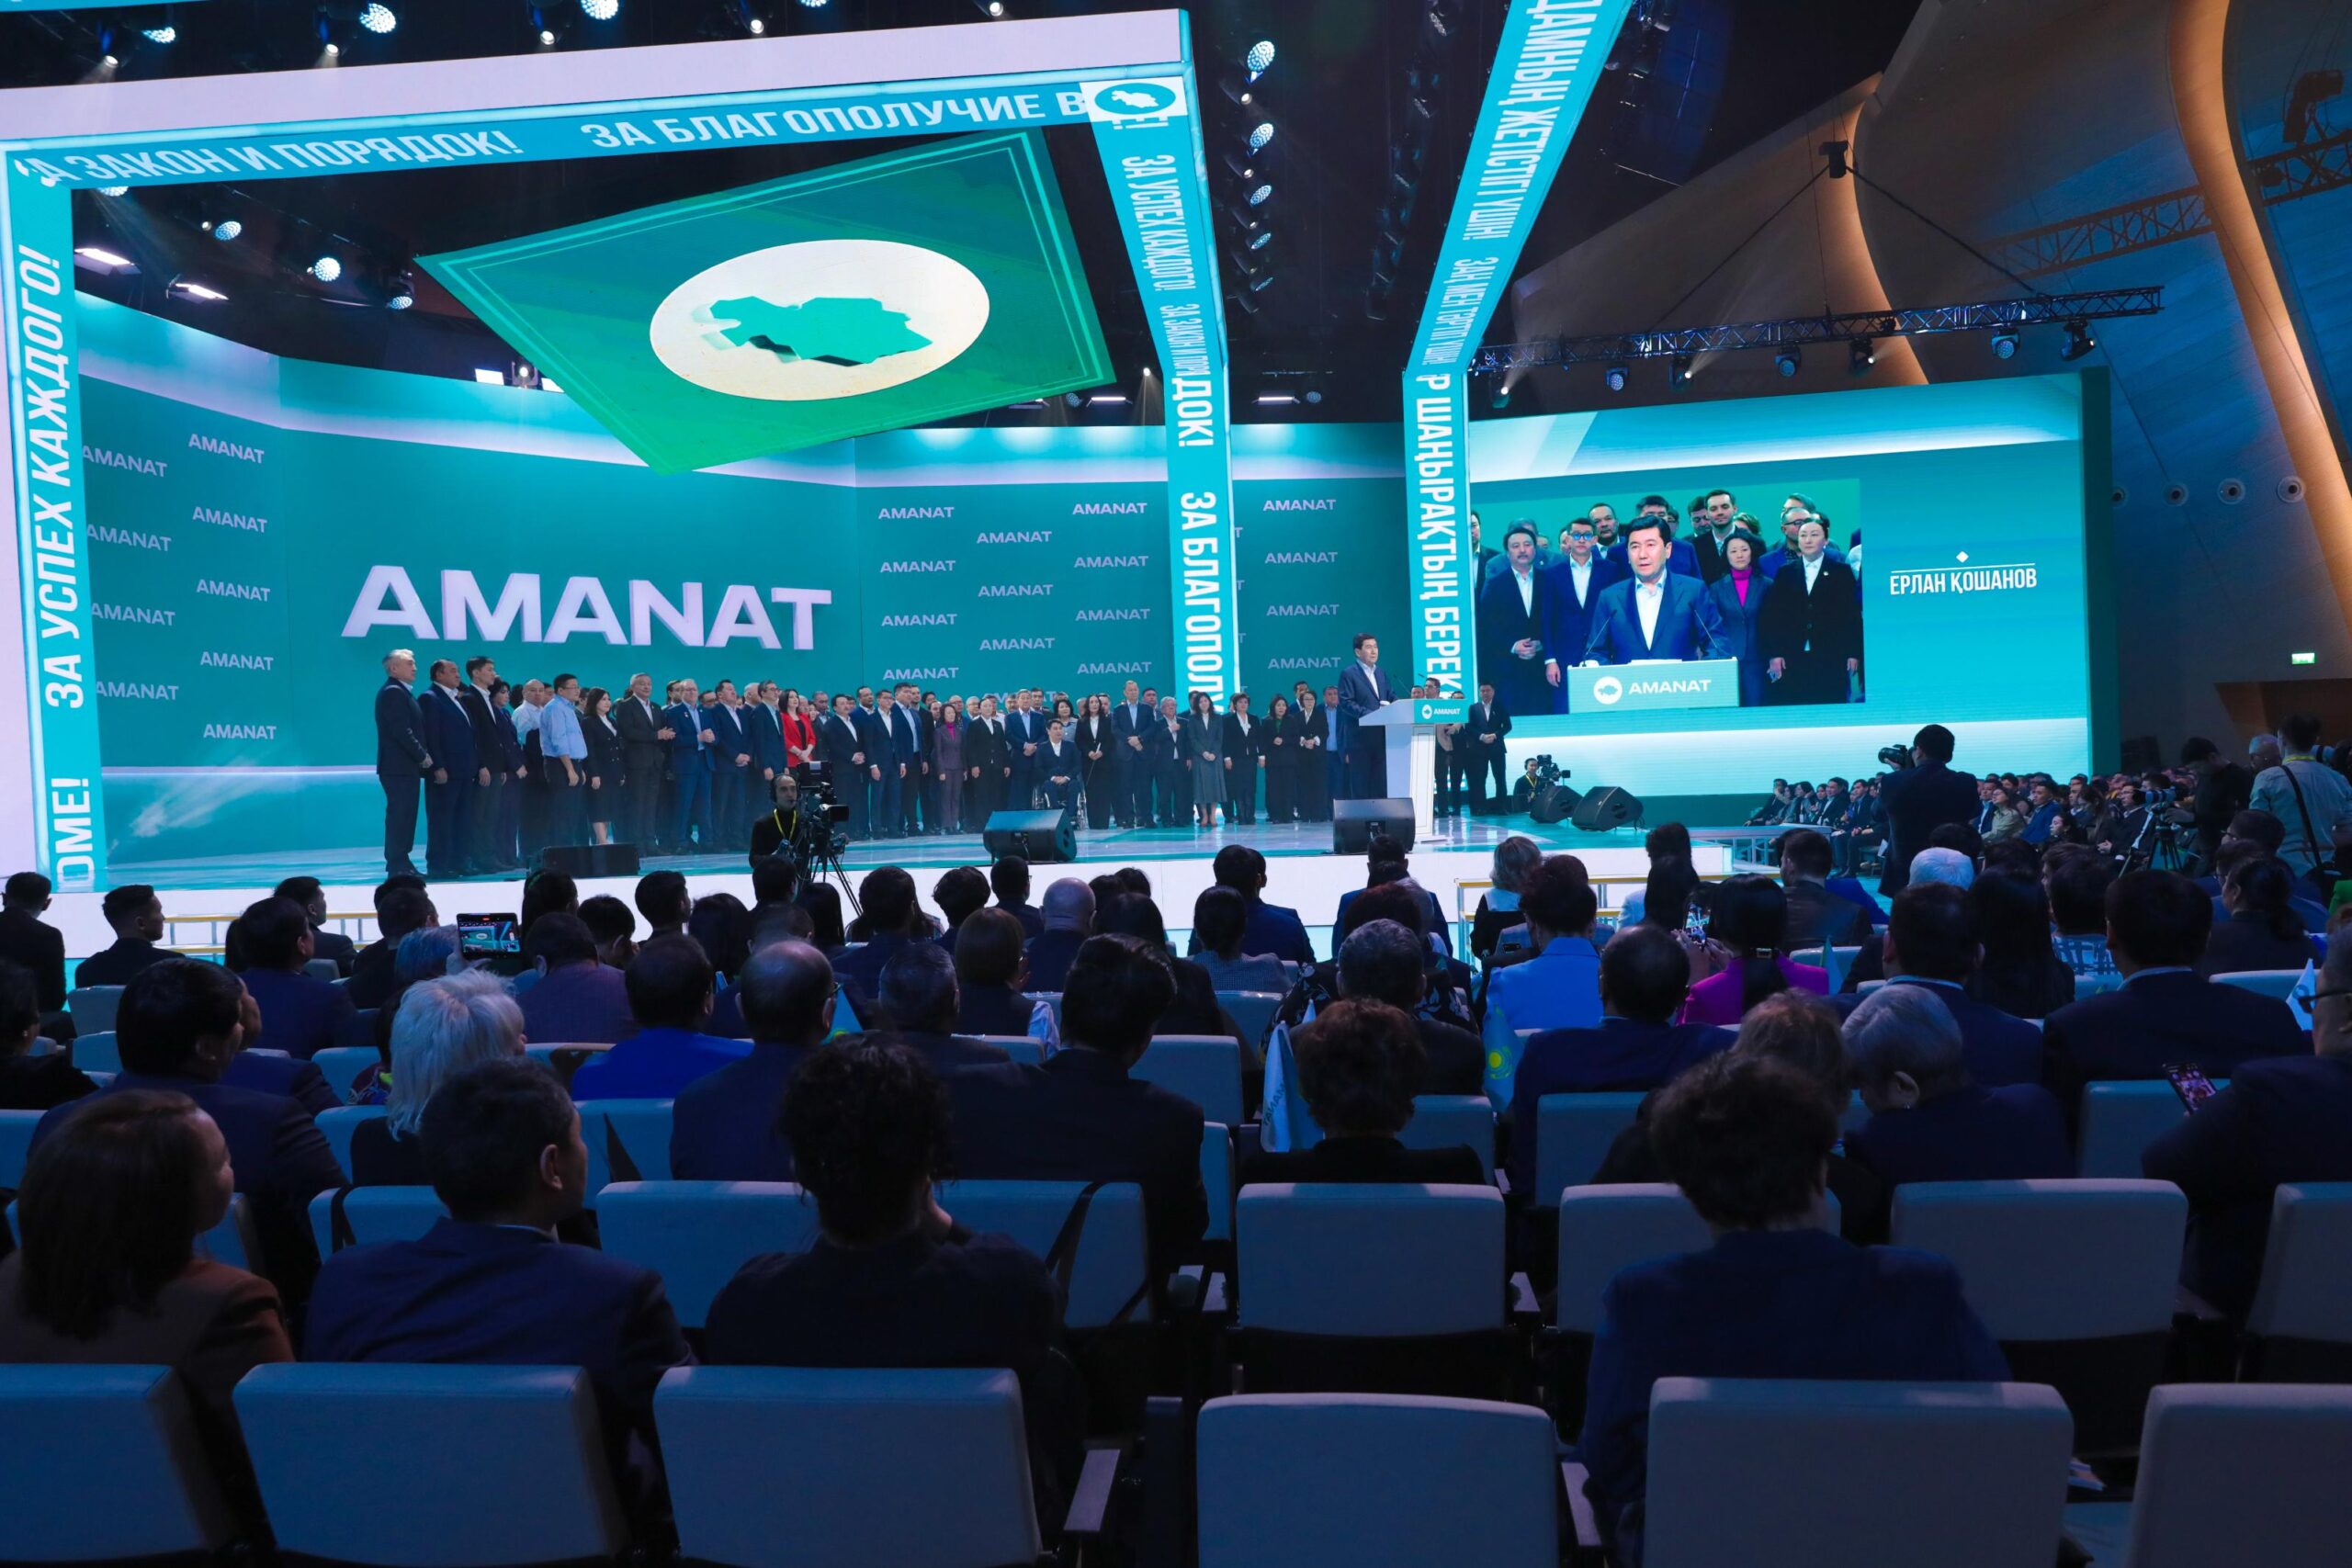 Председатель партии «Аманат» и спикер Мажилиса Ерлан Кошанов выступает на съезде партии в Астане 7 февраля. Фото любезно предоставлено: amanatpartasy.kz.